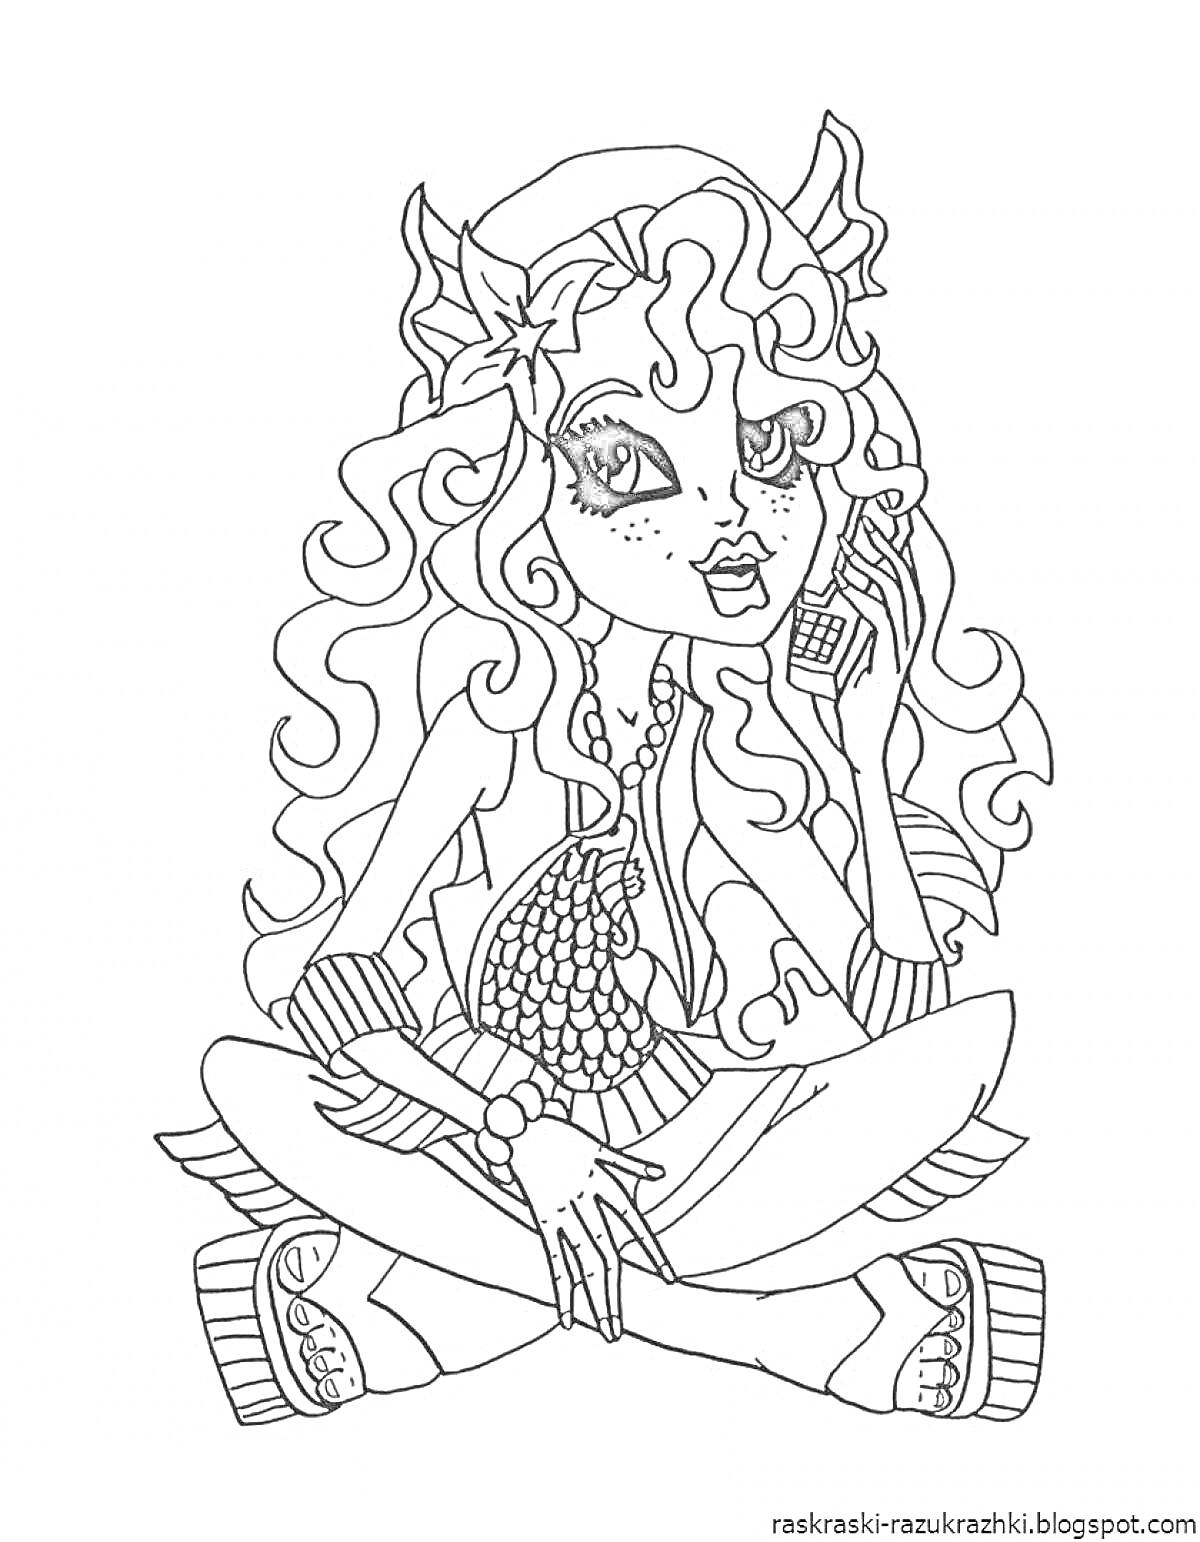 Раскраска Девушка-супергерой с длинными волнистыми волосами и ушками, сидящая в расслабленной позе и держащая телефон, с рюкзаком и одетая в свитер, леггинсы и платформенные туфли